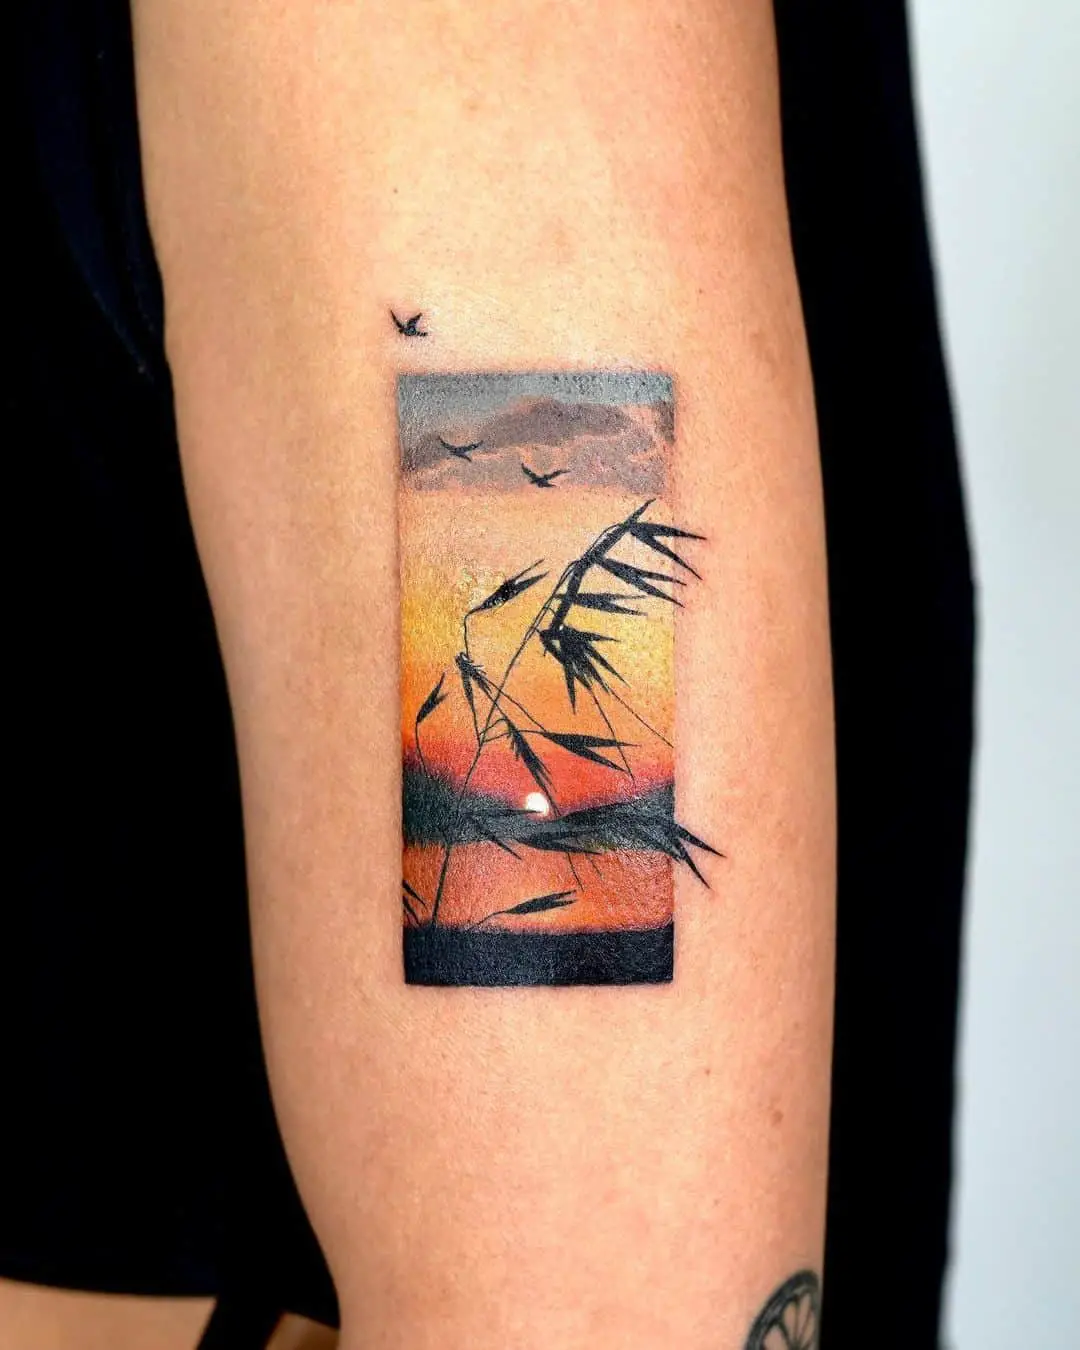 Sunset tattoo by opal.tattoo